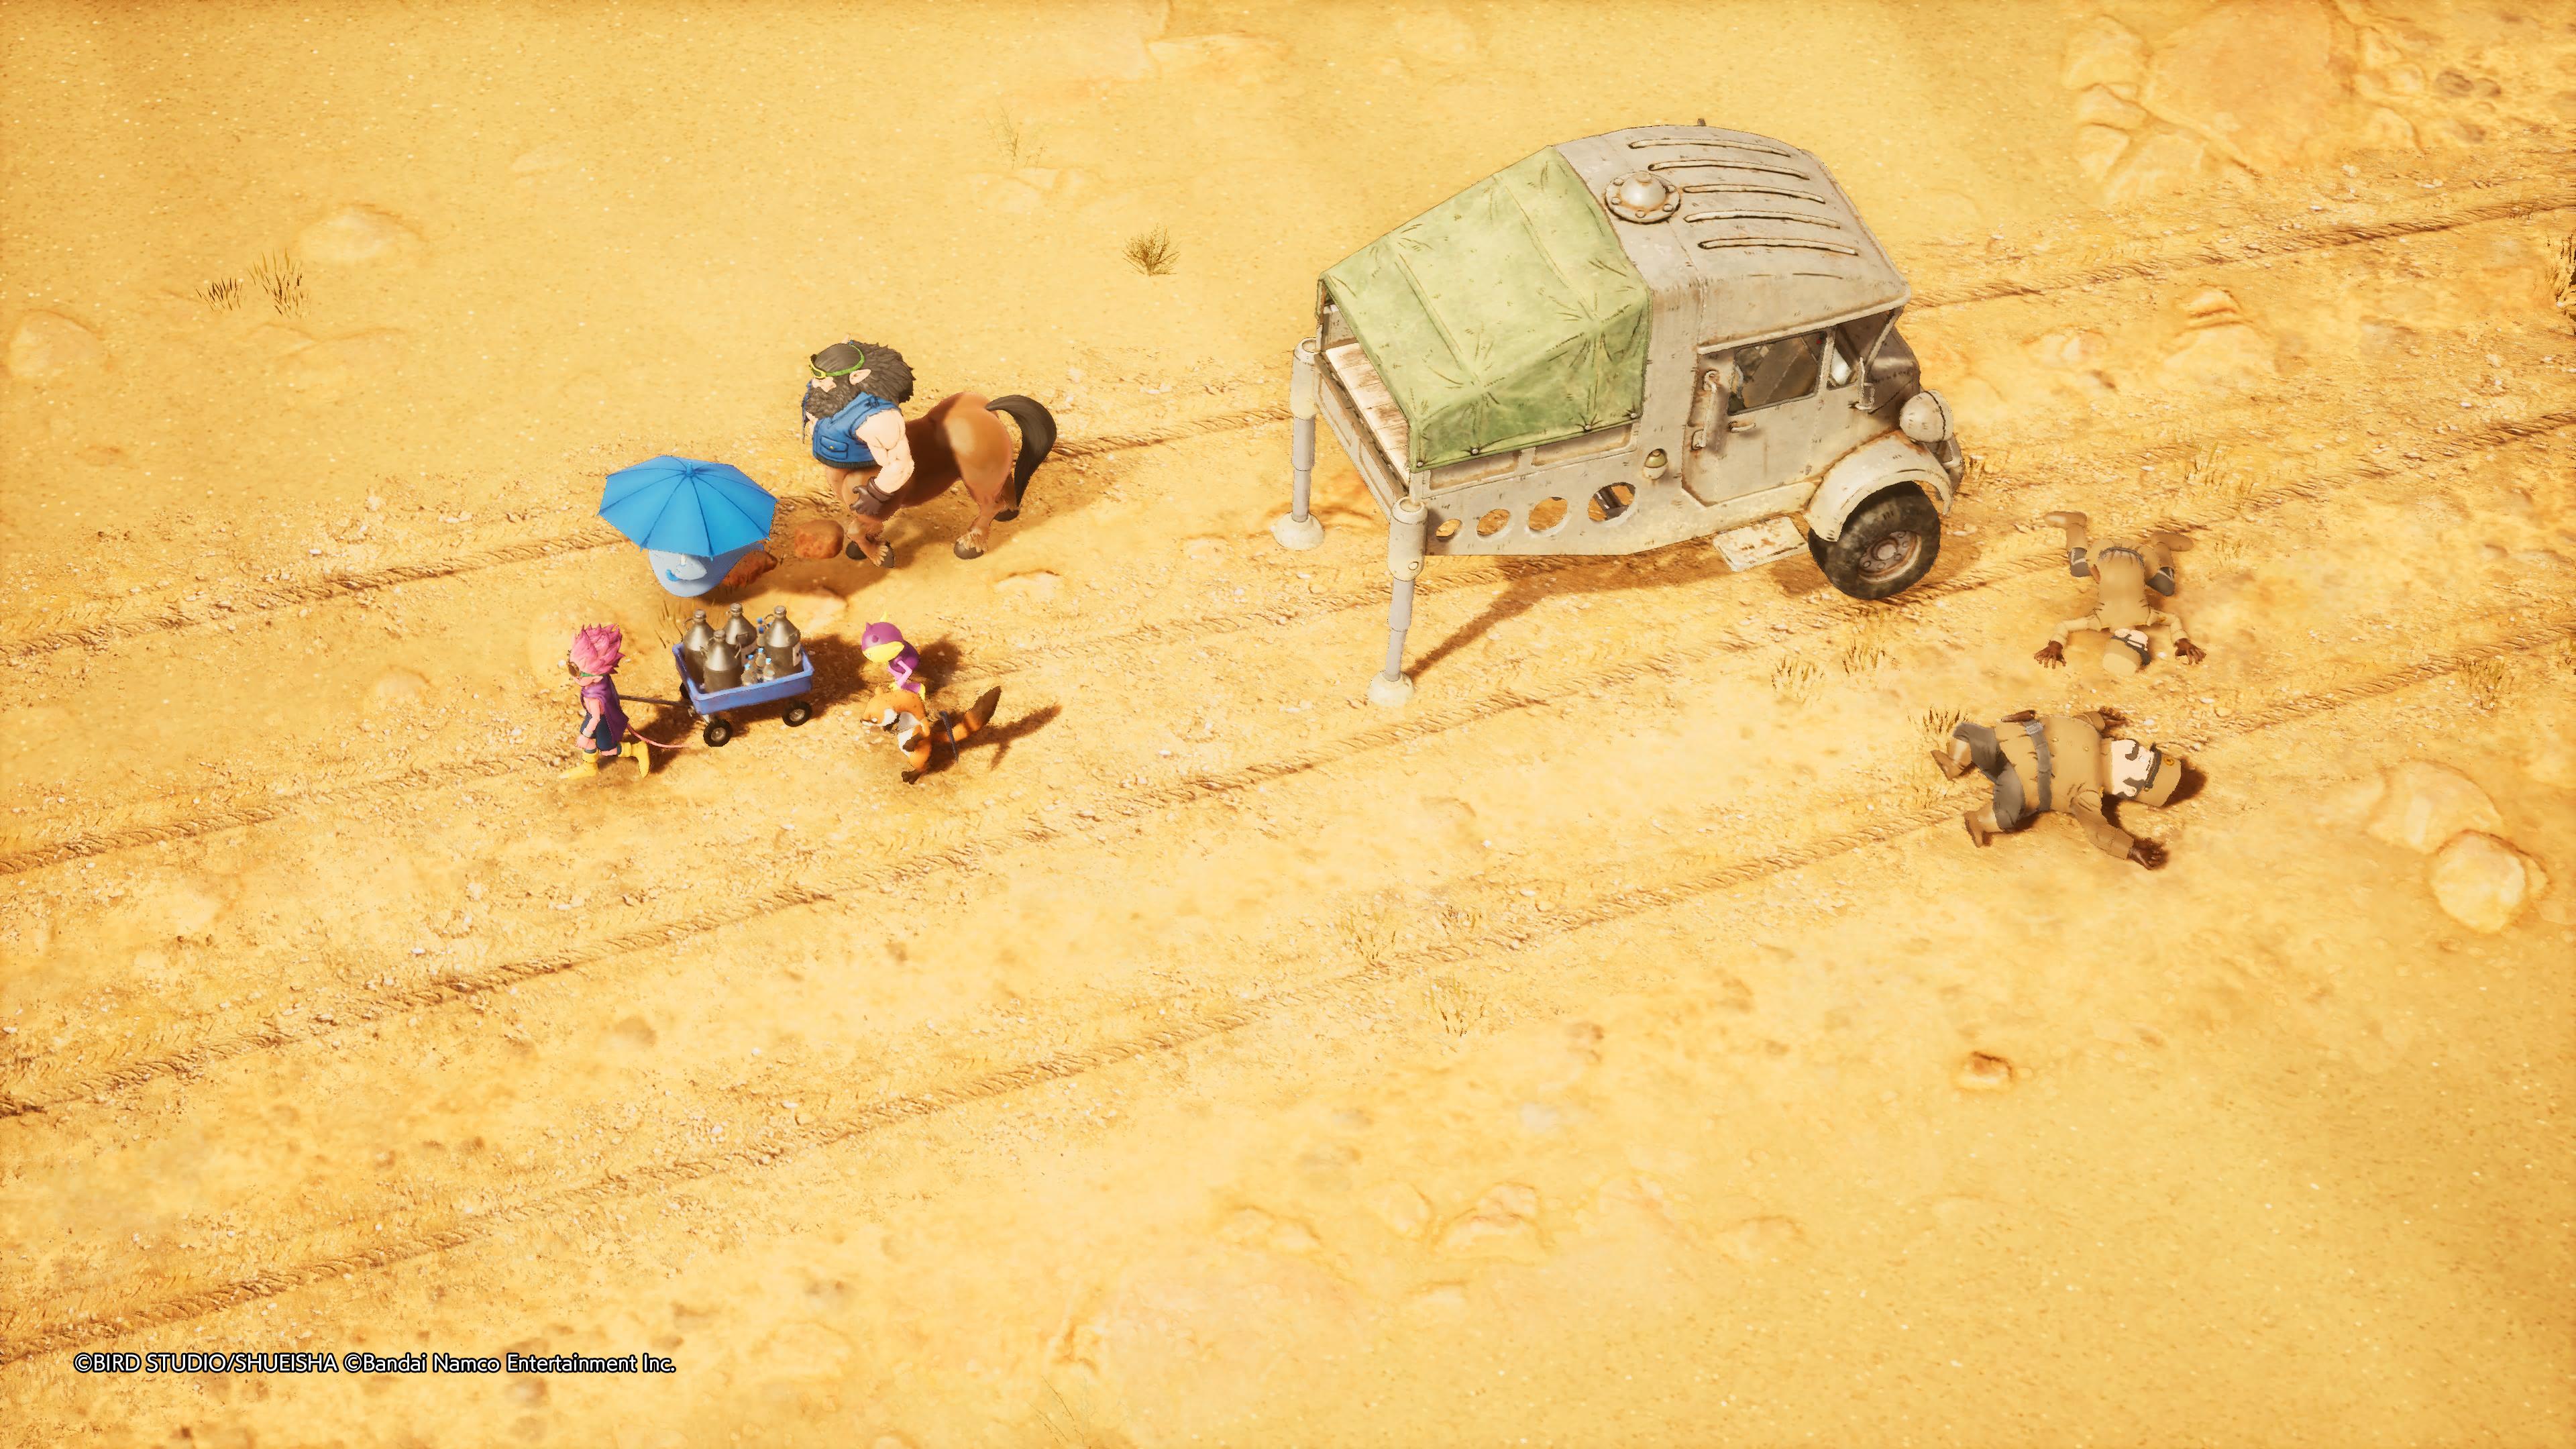 Reseña: Sand Land, una fiel adaptación de la obra de Akira Toriyama 27